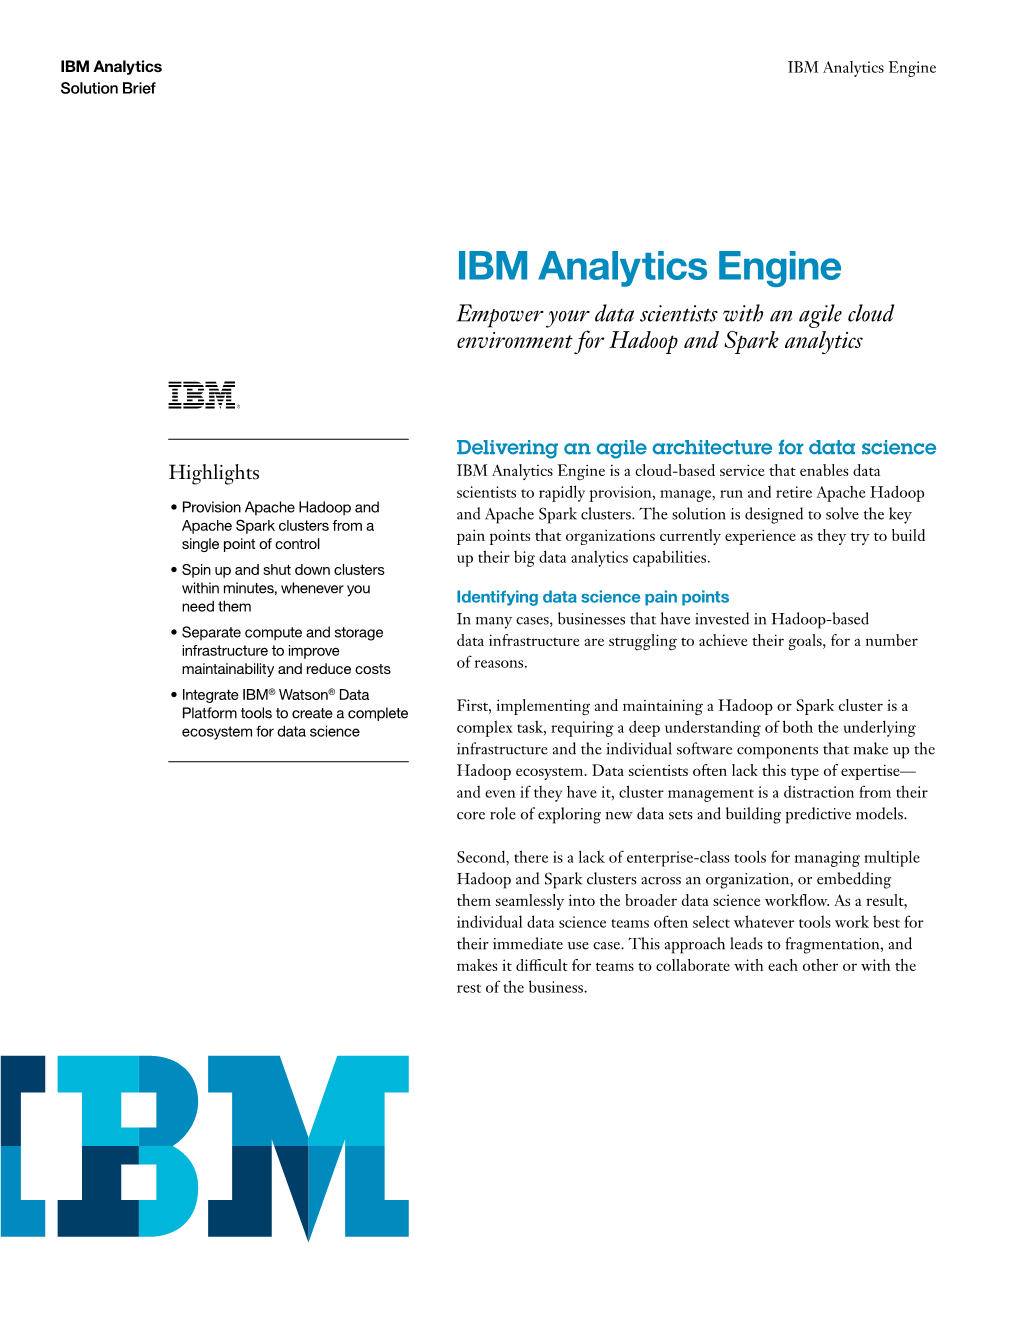 IBM Analytics Engine Solution Brief